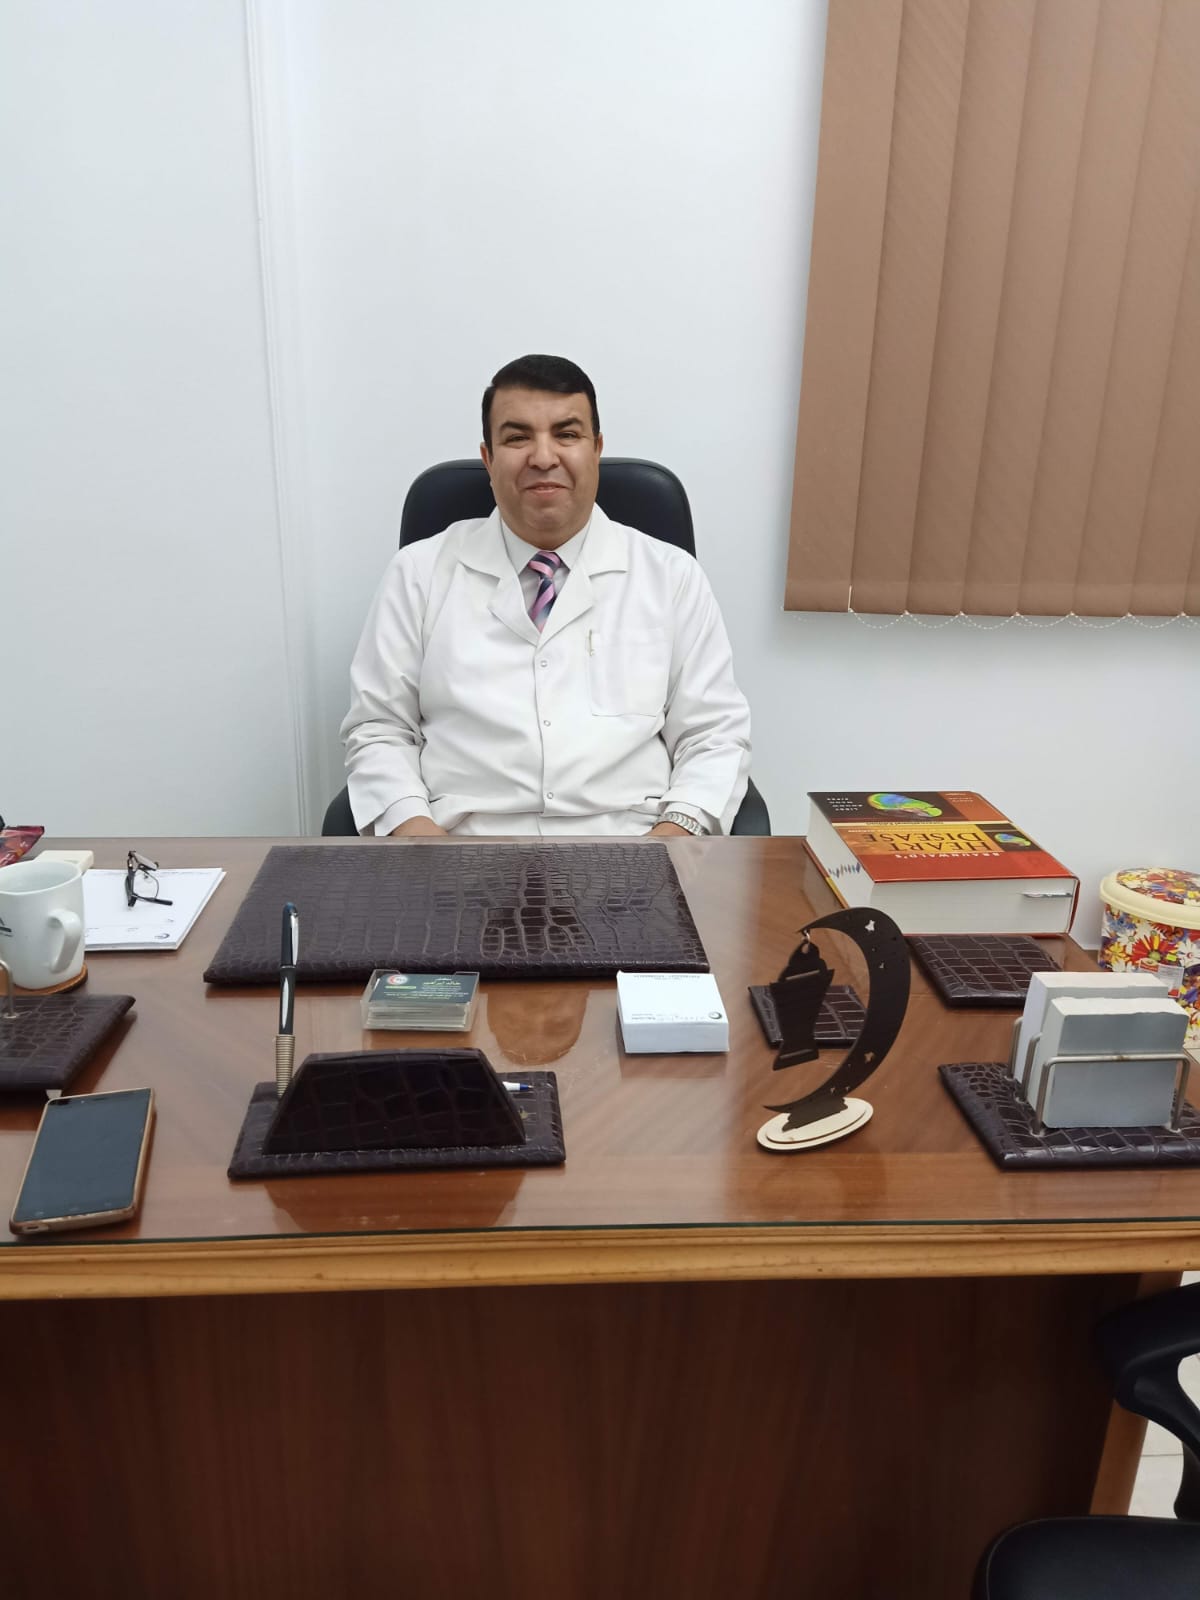 دكتور خالد ابراهيم وهبه